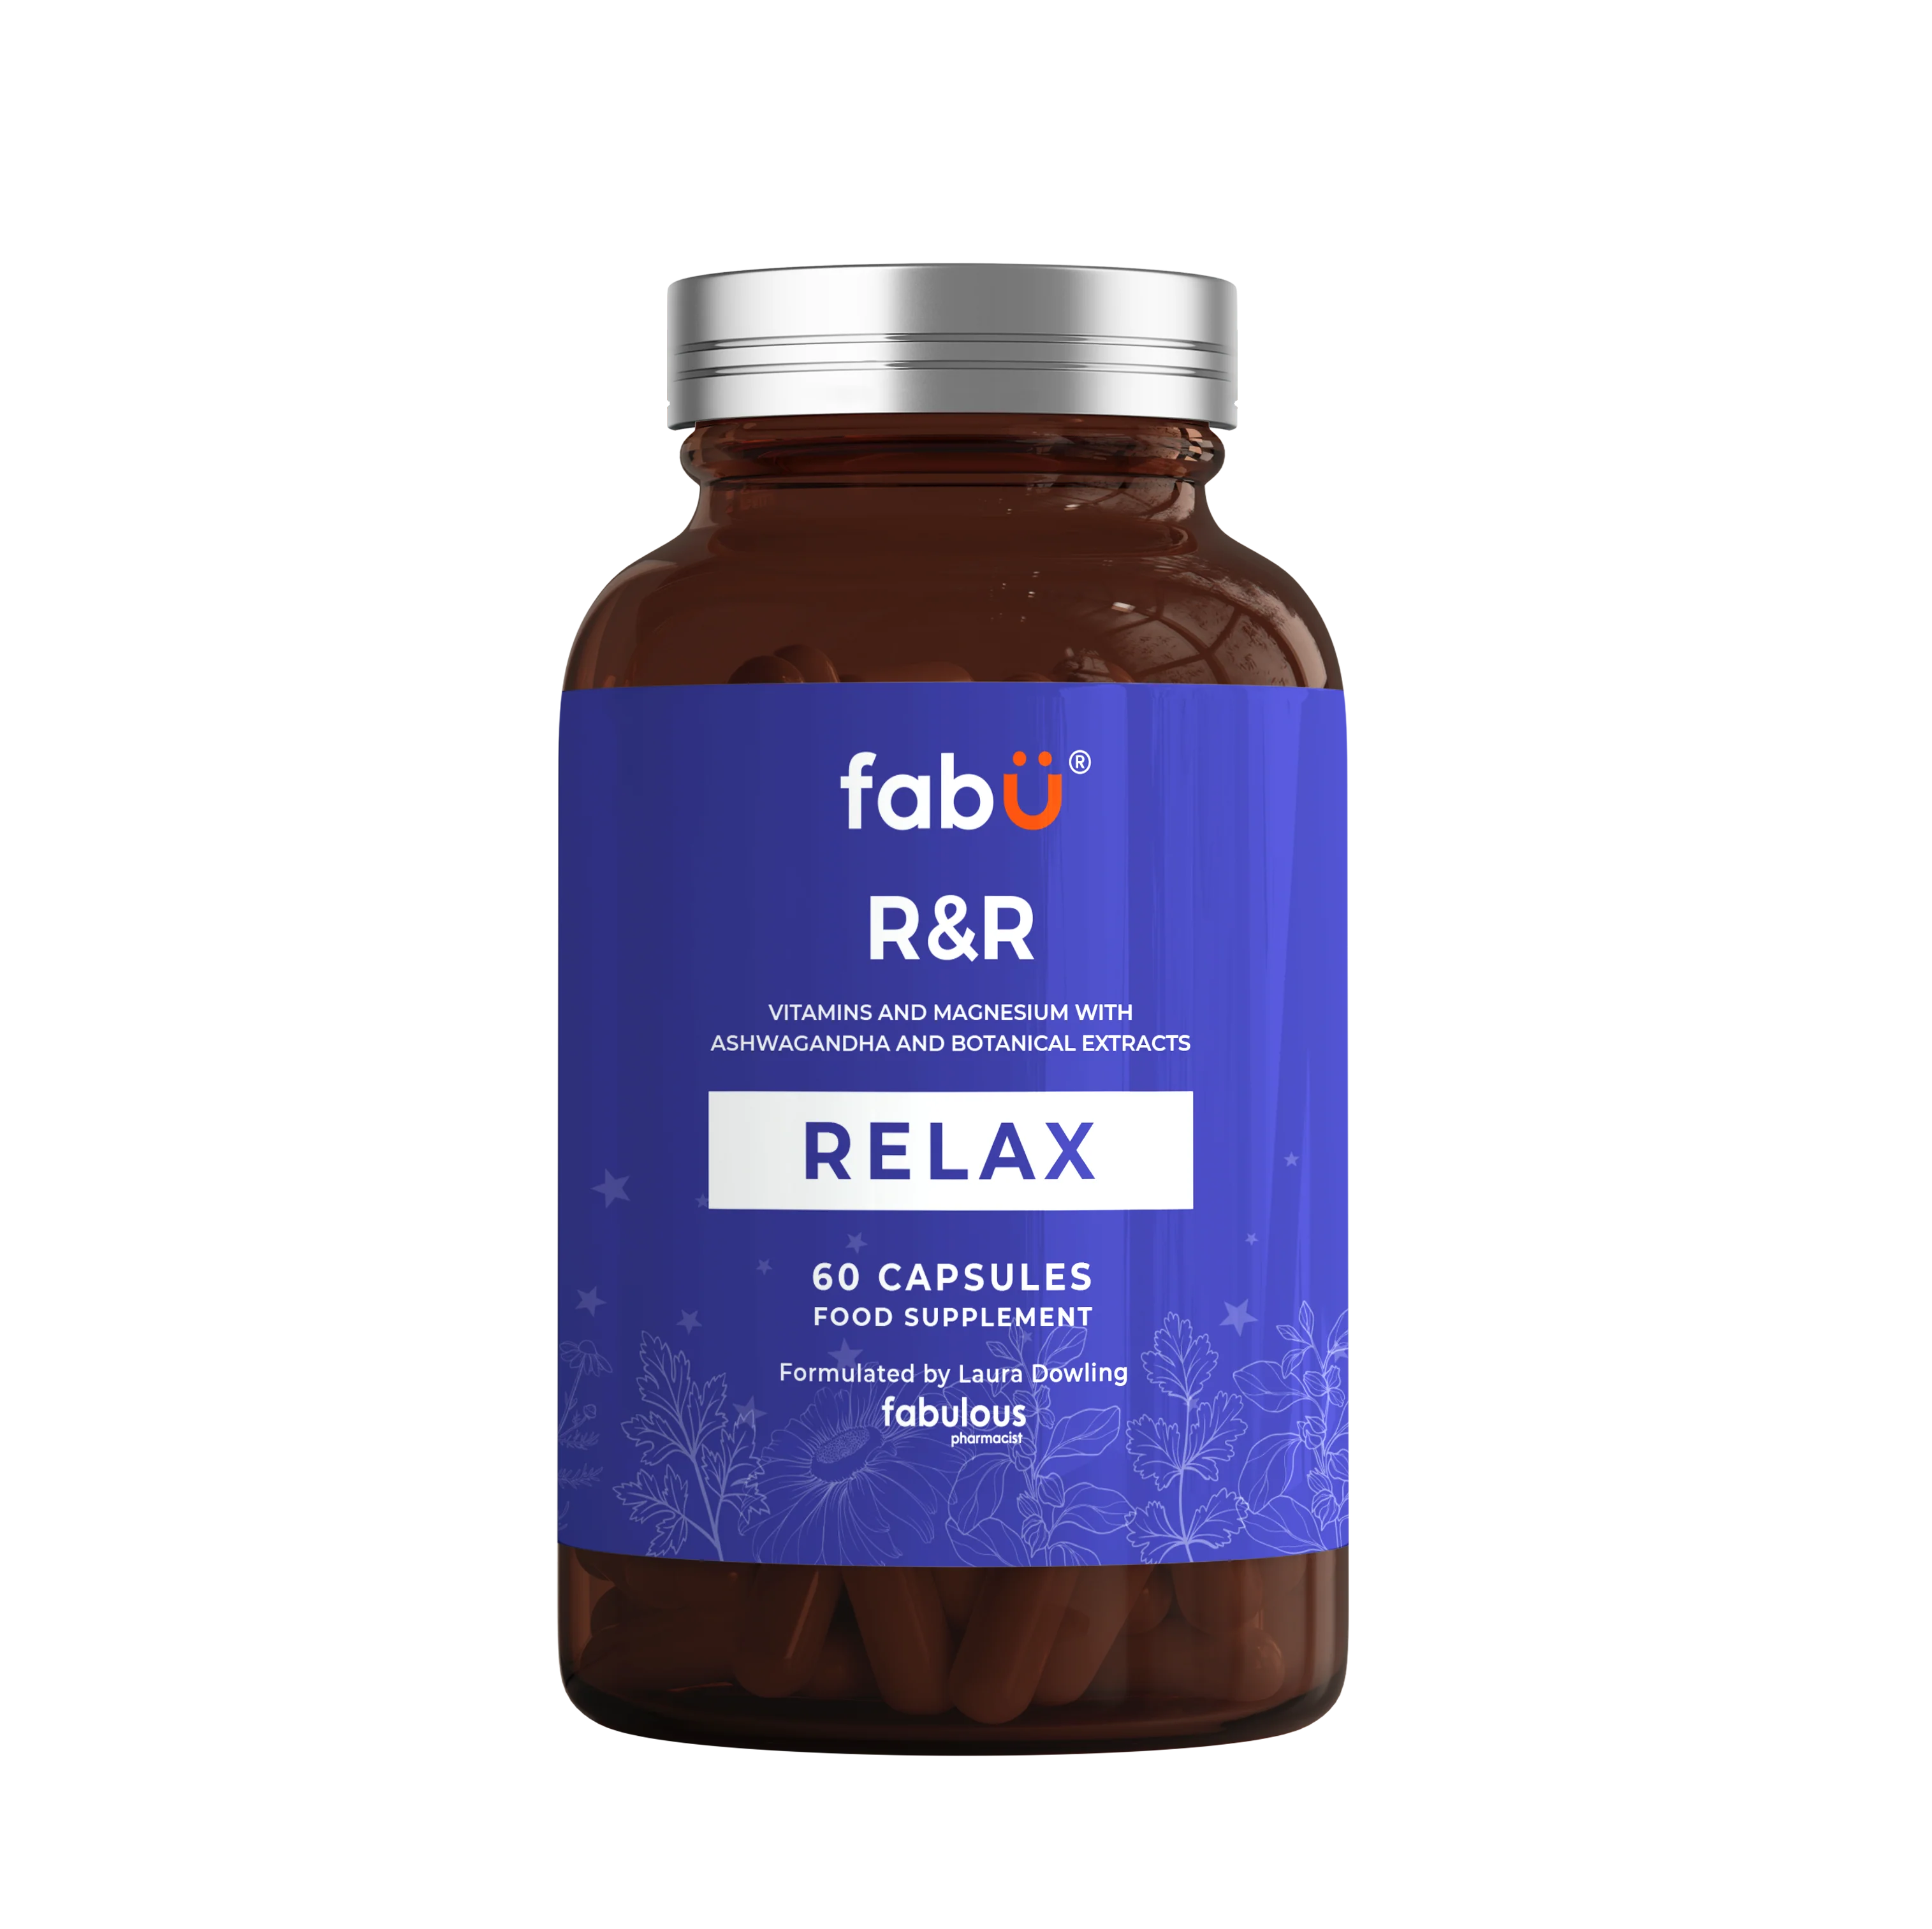 Fabu R & R Relax Capsules